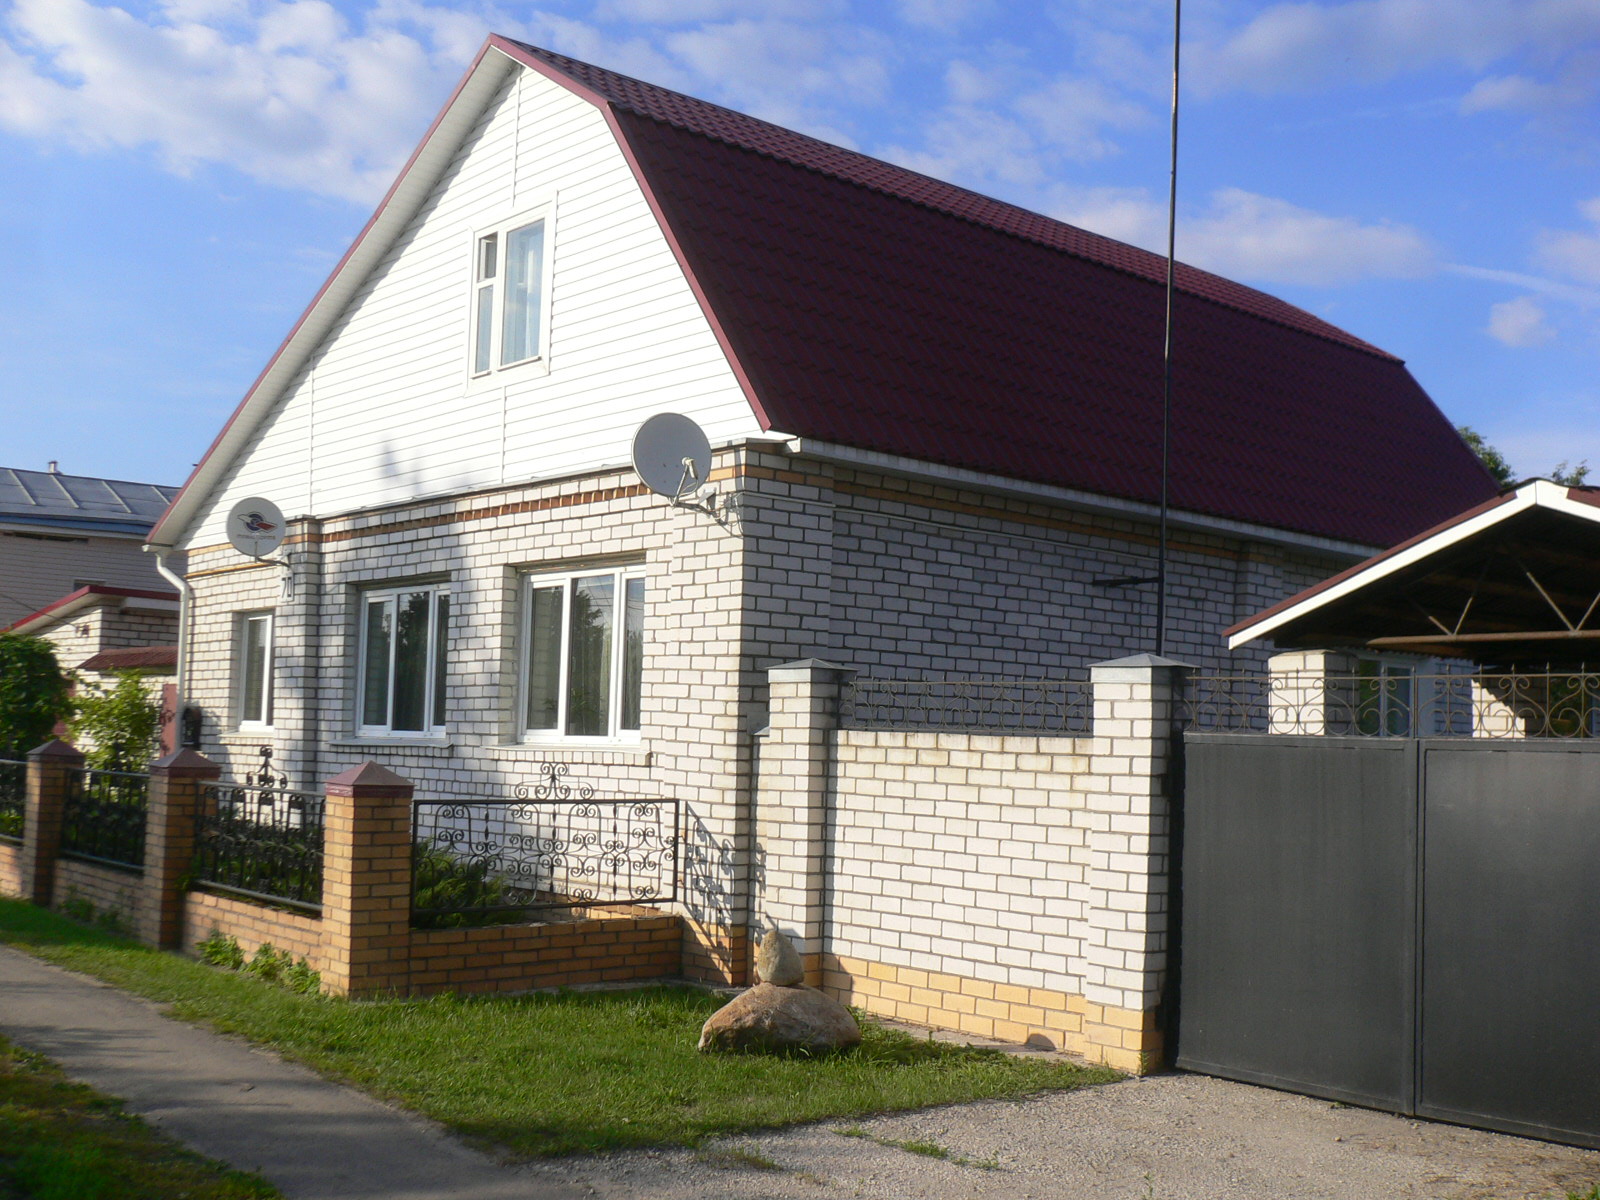 Дом в павловском посаде московской области купить